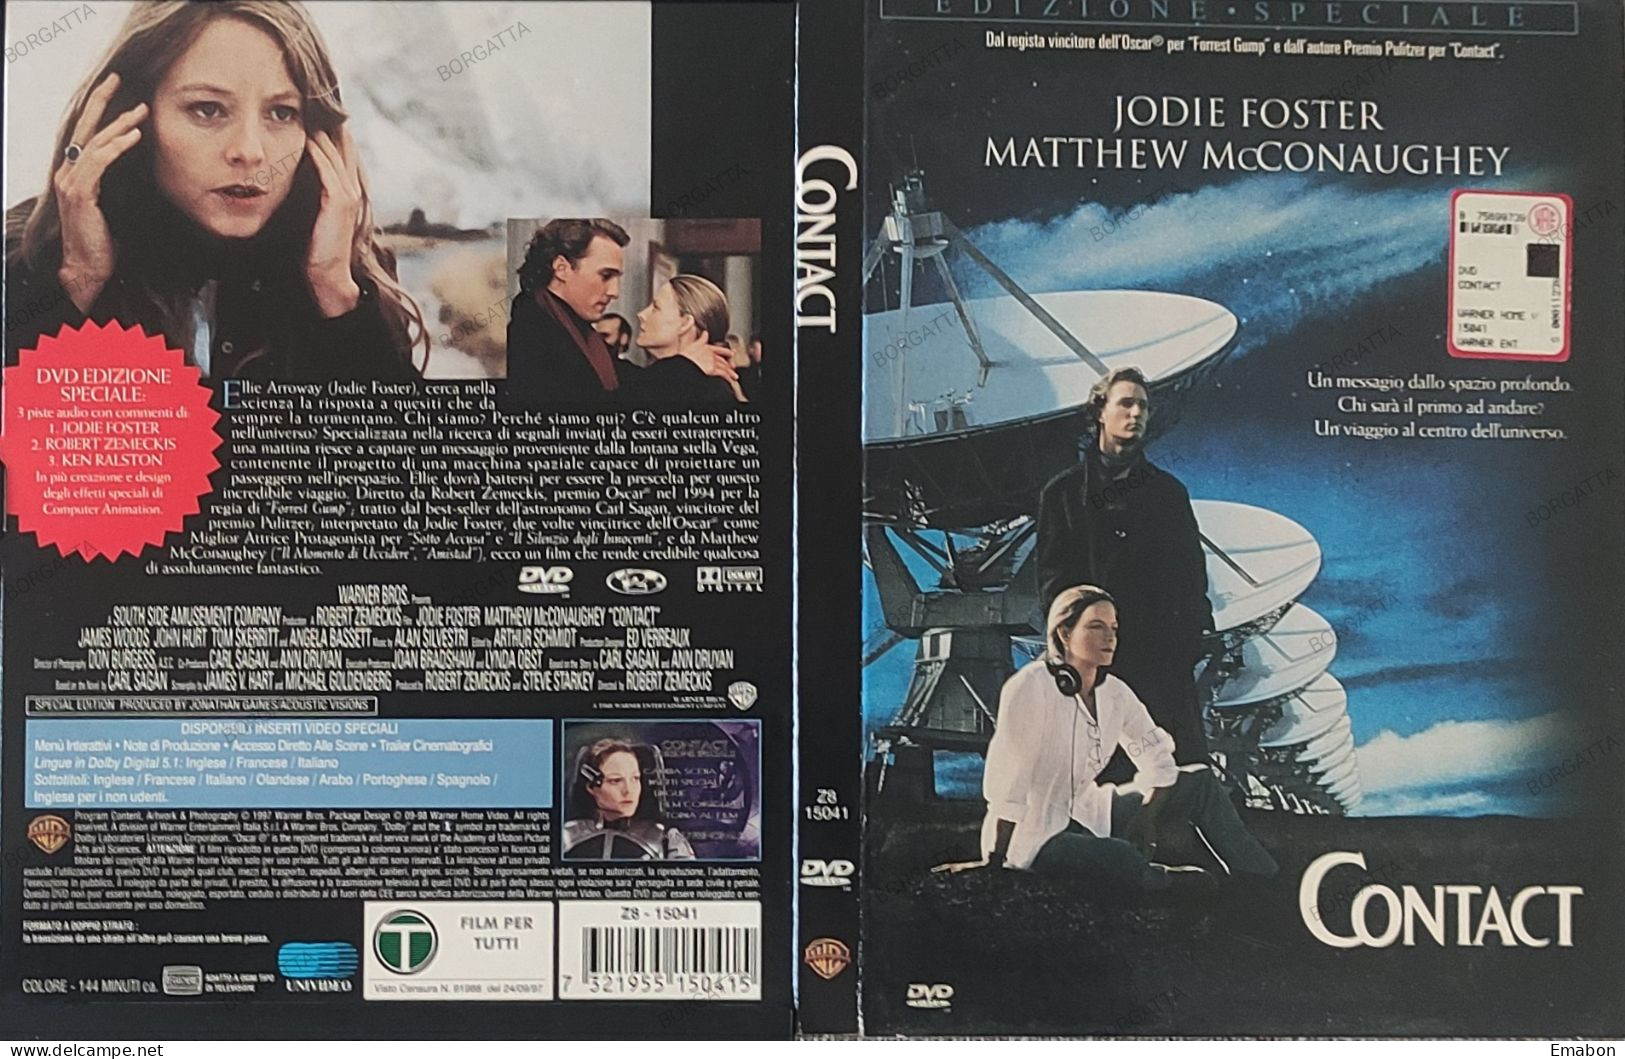 BORGATTA - FANTASCIENZA - EDIZIONE SPECIALE Dvd CONTACT - JODIE FOSTER - PAL 2 - WARNER 1997 - USATO In Buono Stato - Sci-Fi, Fantasy